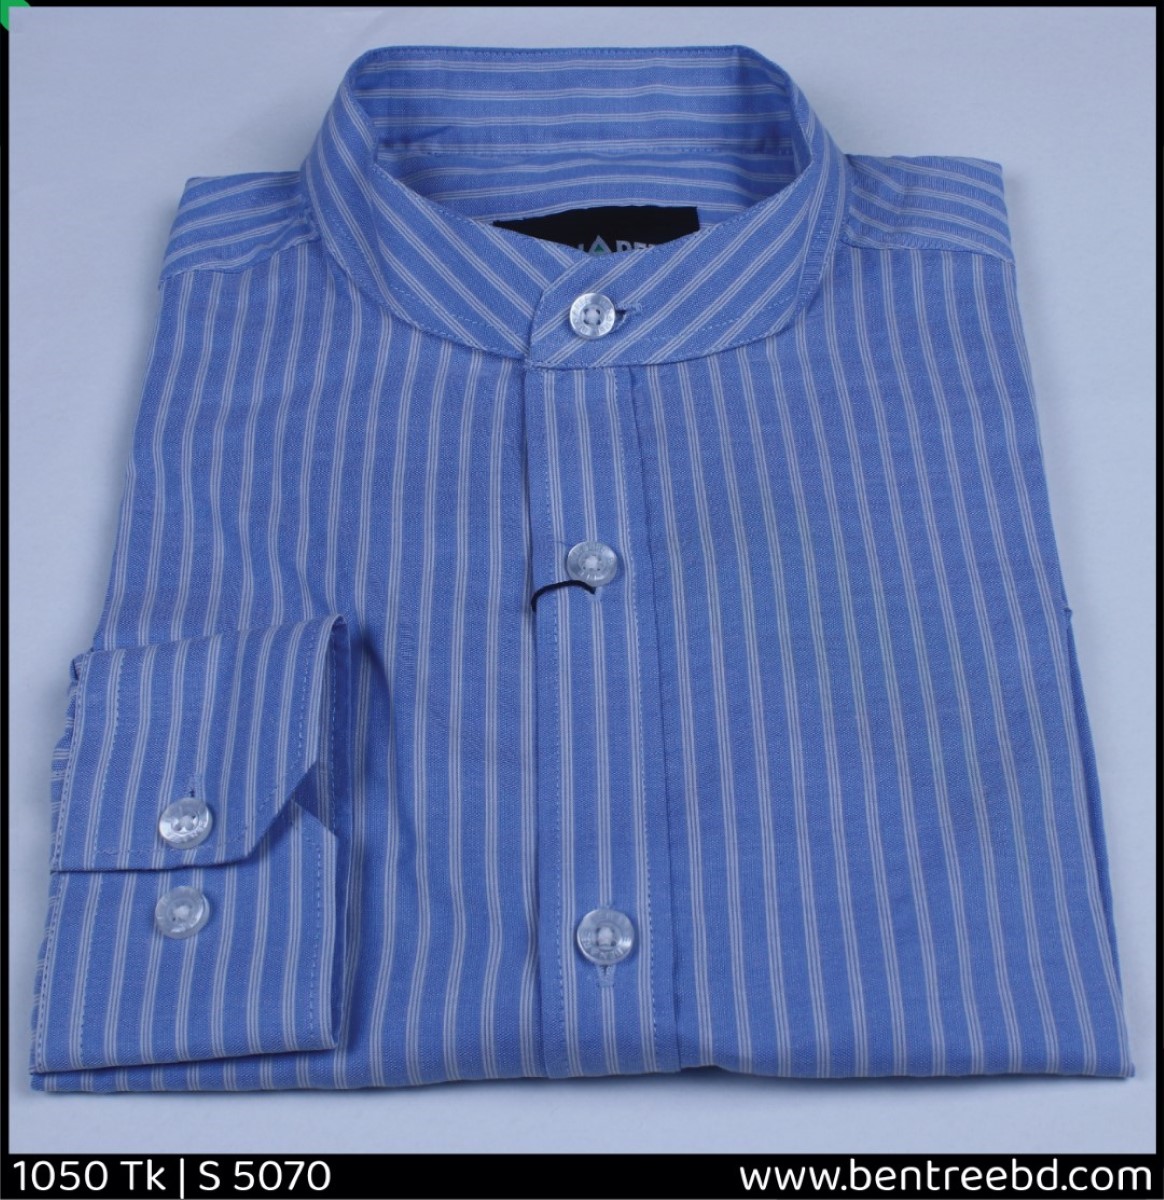 Ban Collar Shirt - 23S 5070 - Bentree